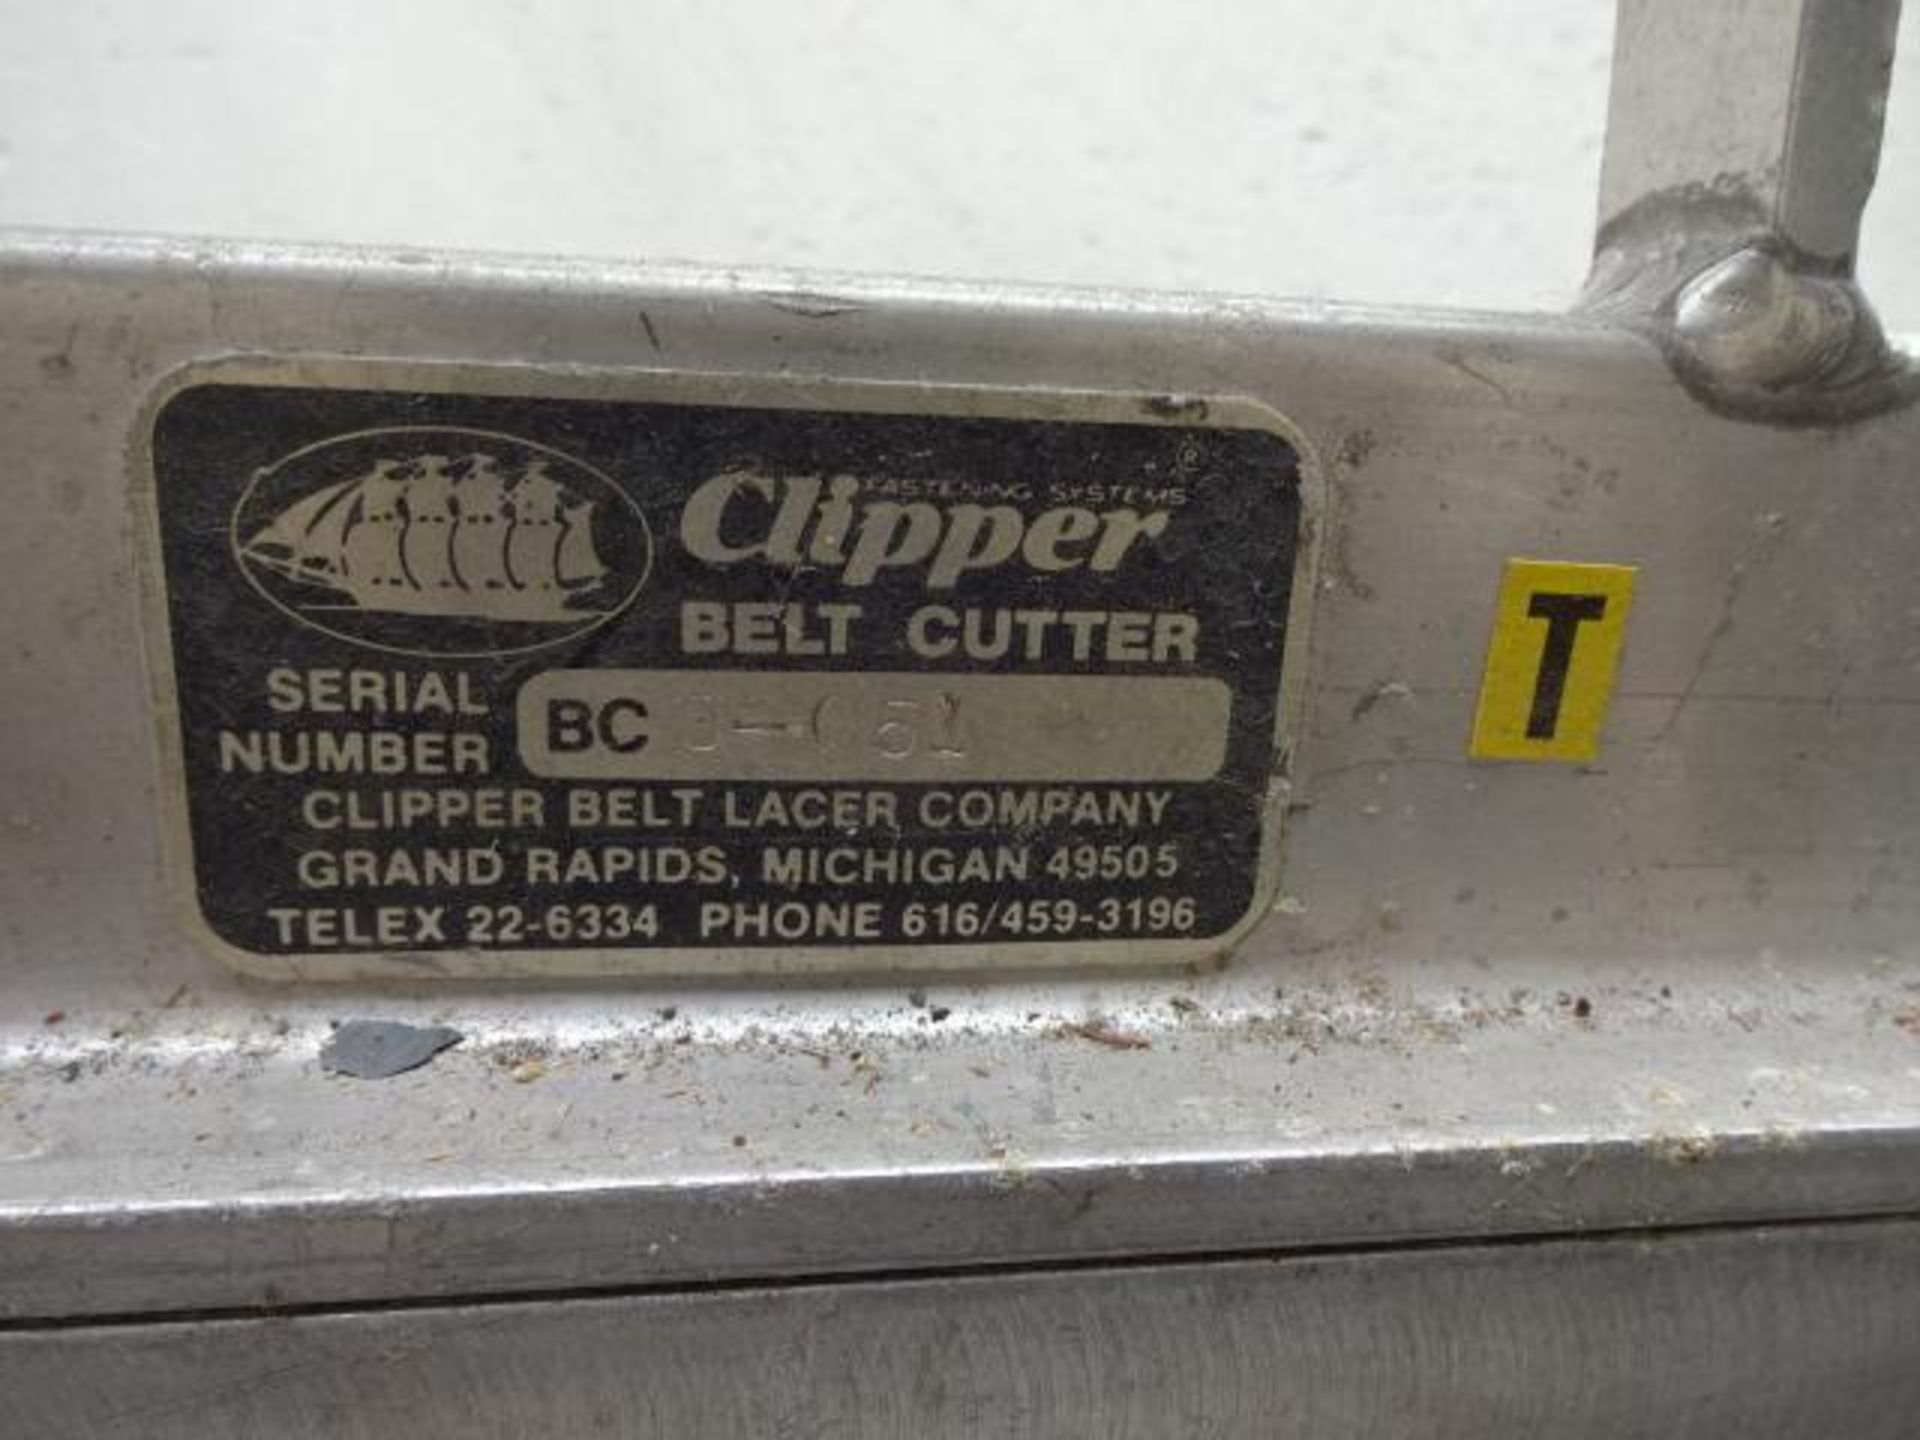 Clipper brand belt cutter - Image 2 of 2